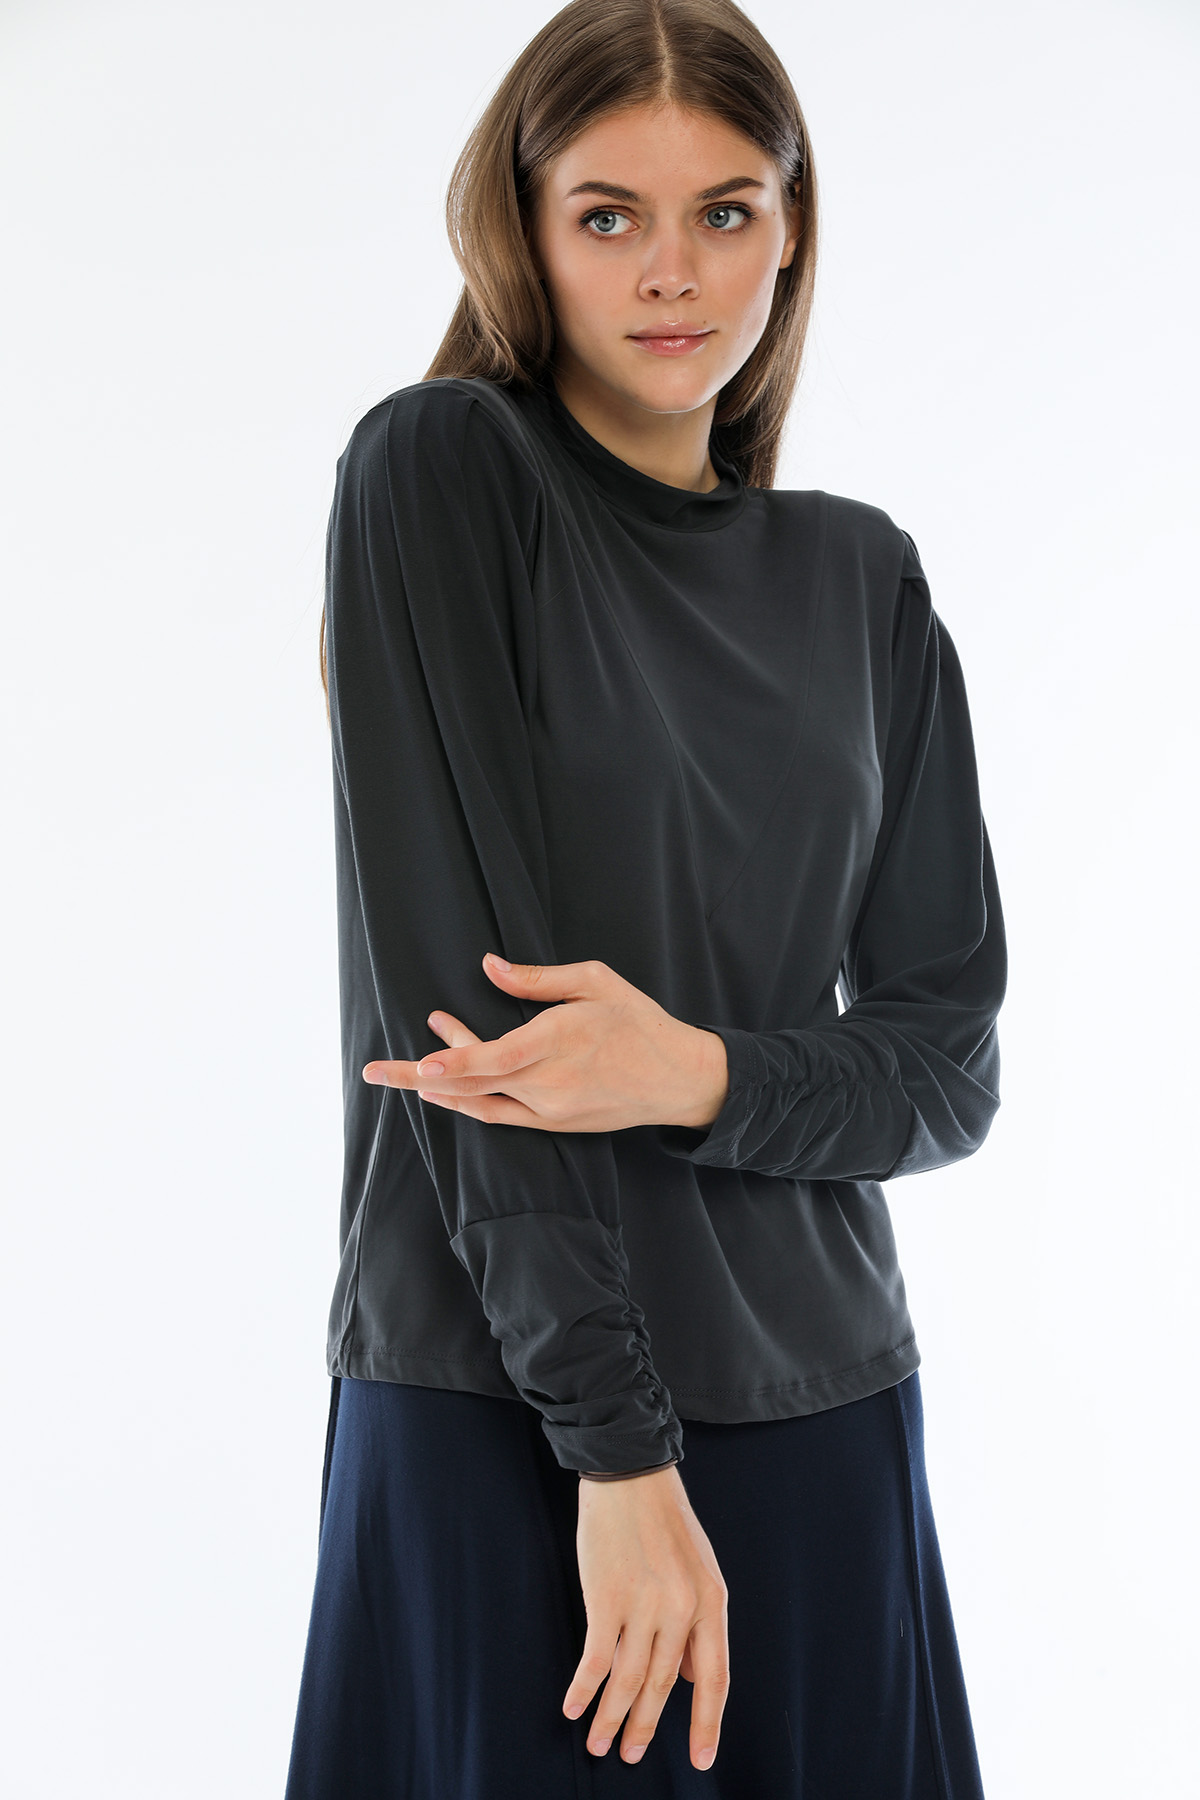 Perla Blanca Omuz Vatkalı Kollar Büzgülü Lacivert Modal Bluz